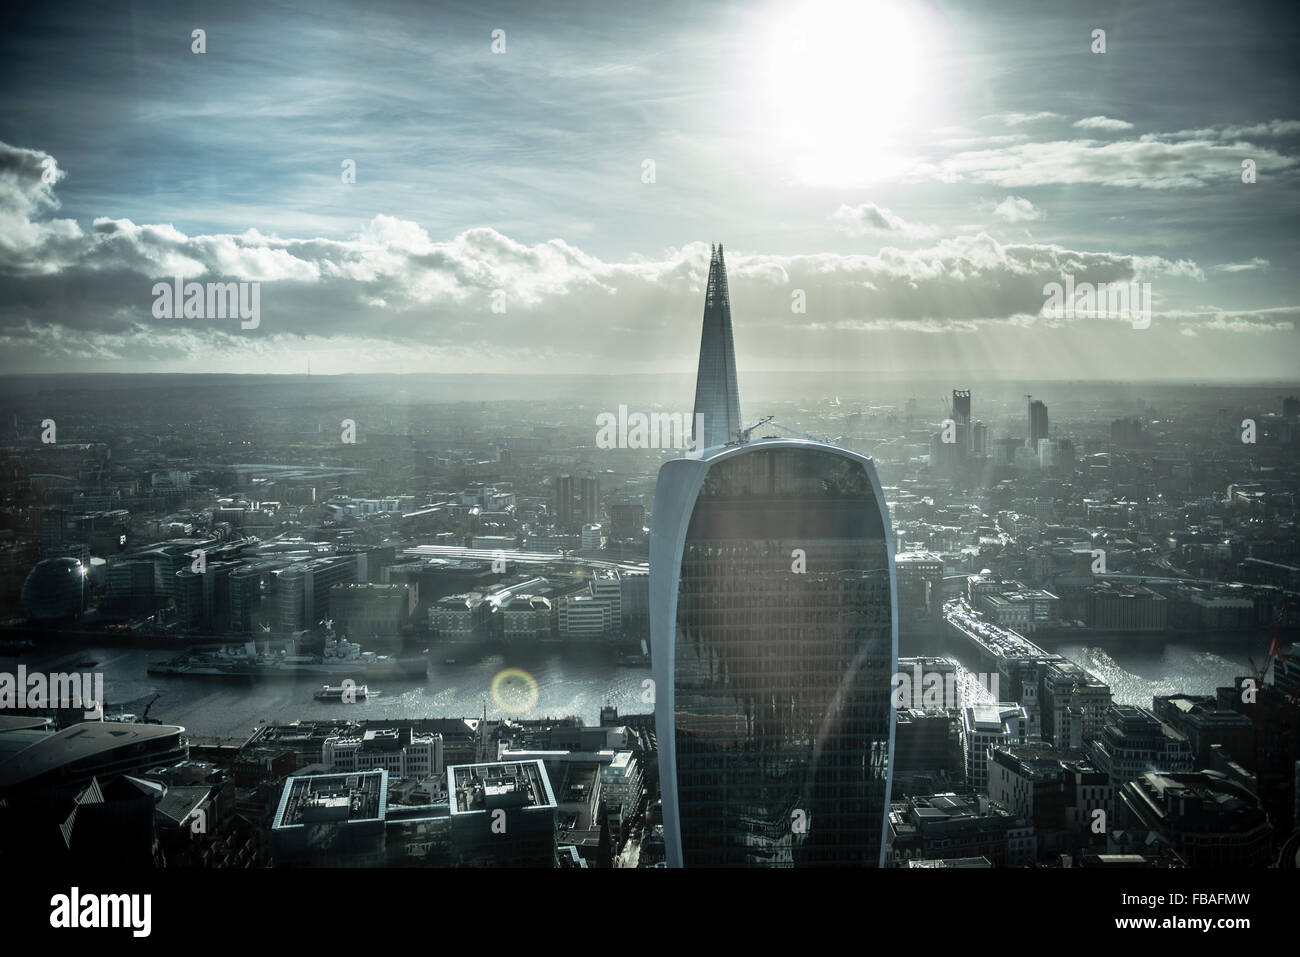 Vue sur la ville de Londres, le Shard et talkie walkie Banque D'Images